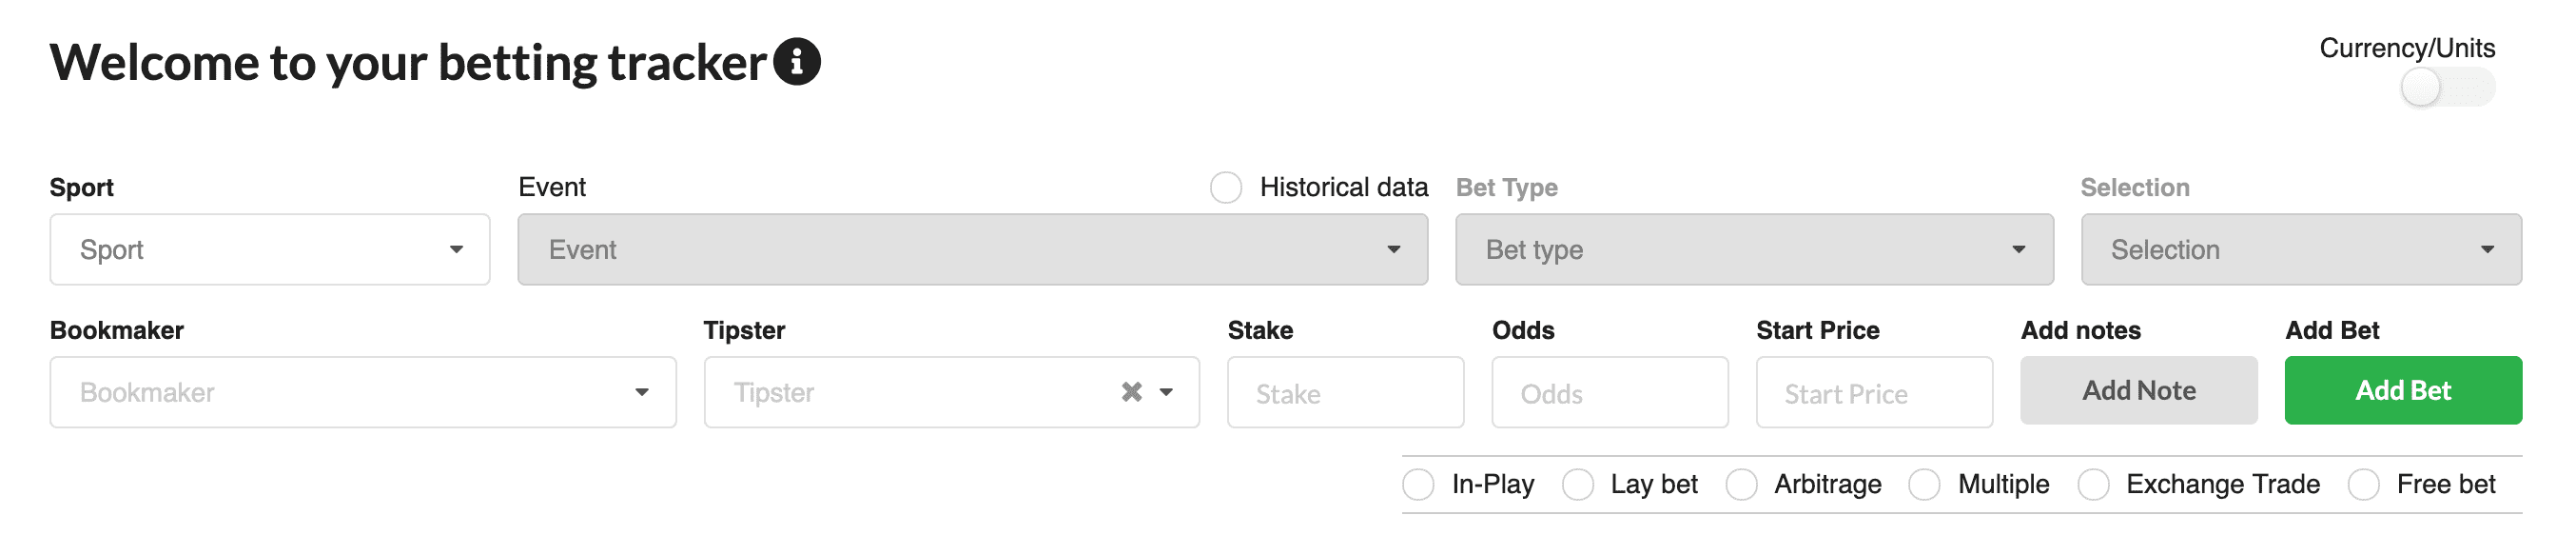 Vista desde el rastreador de apuestas de Betting.com